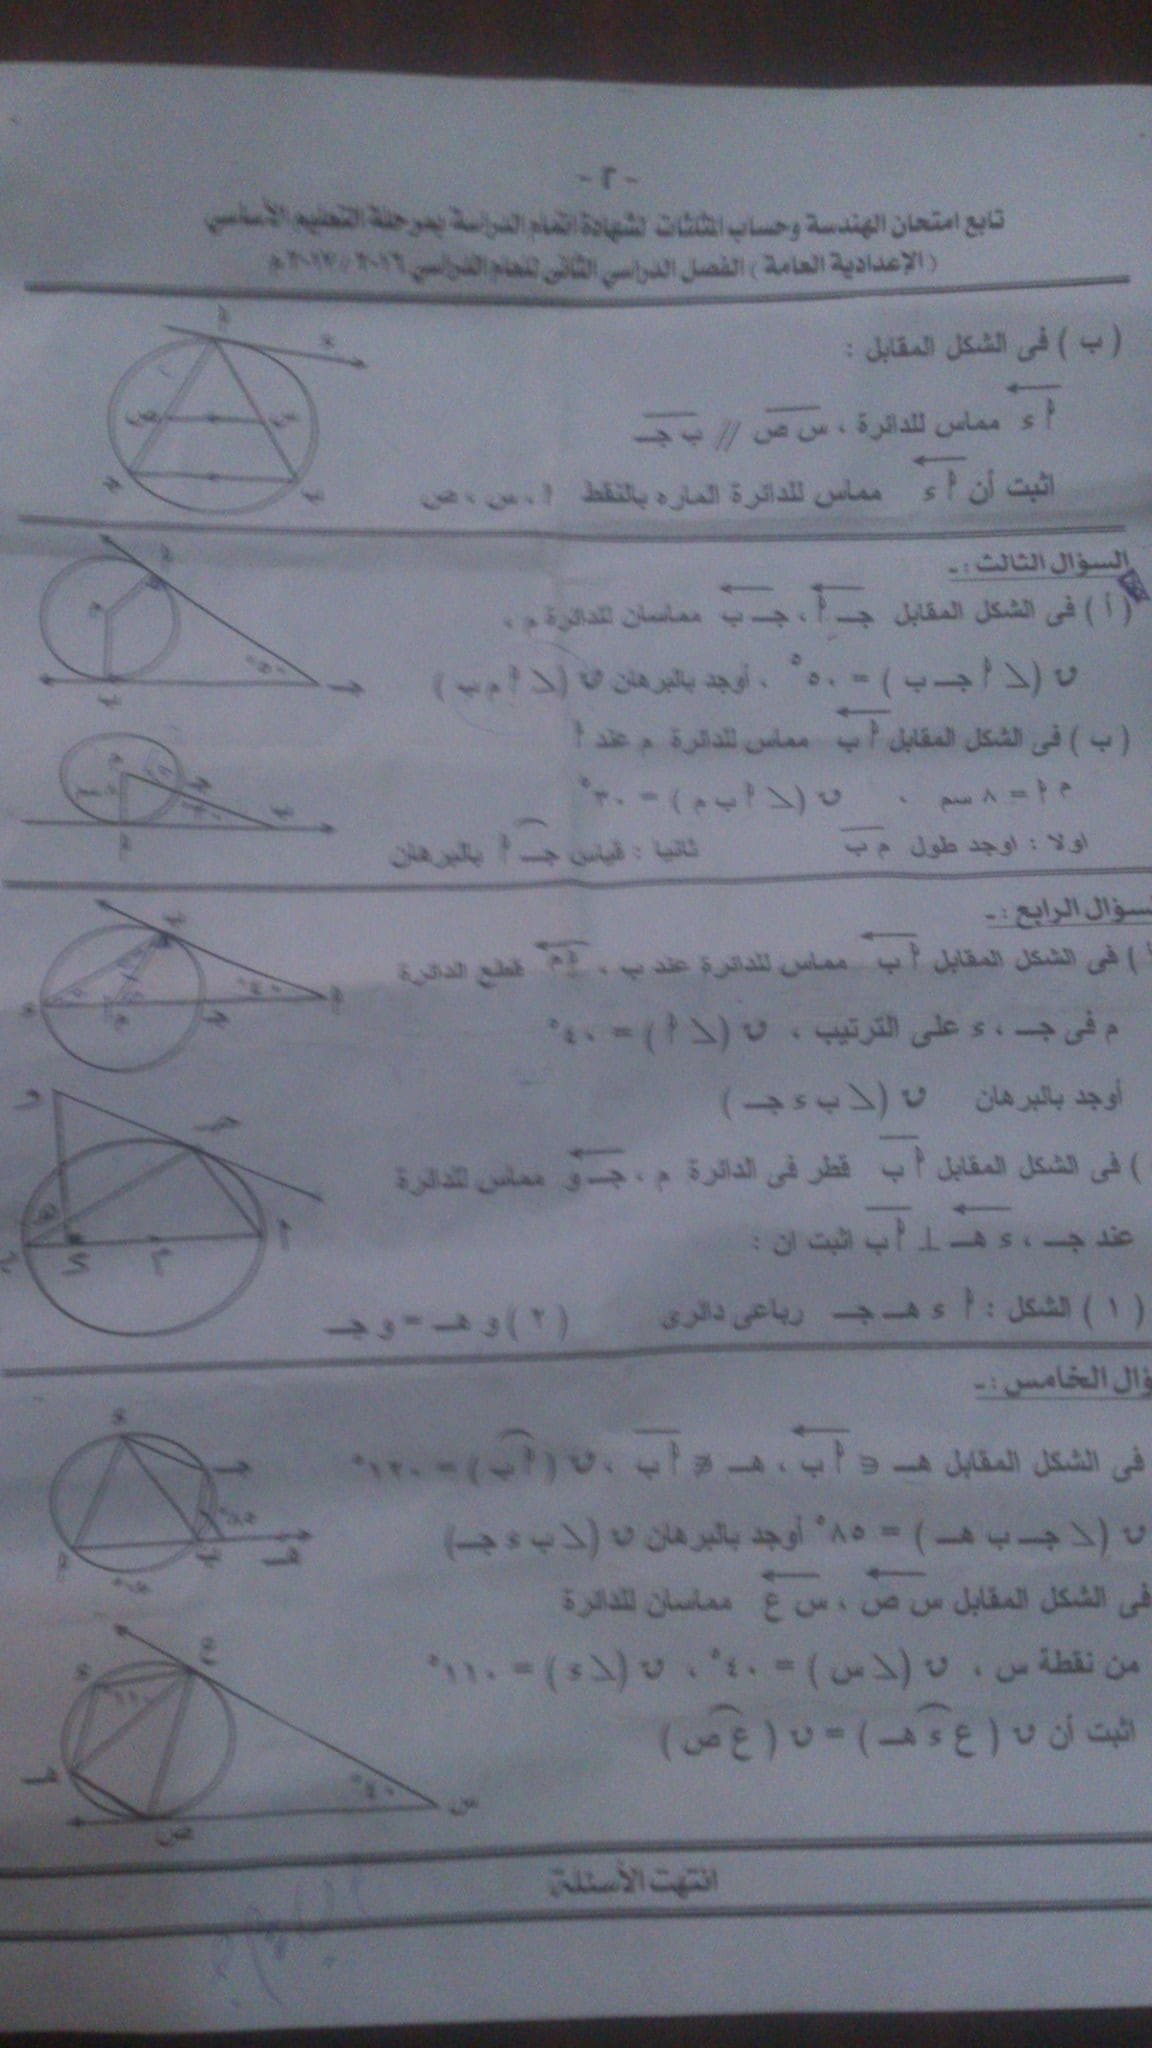 امتحان الهندسة وحساب مثلثات للصف الثالث الاعدادى الترم الثانى 2017 محافظة اسيوط